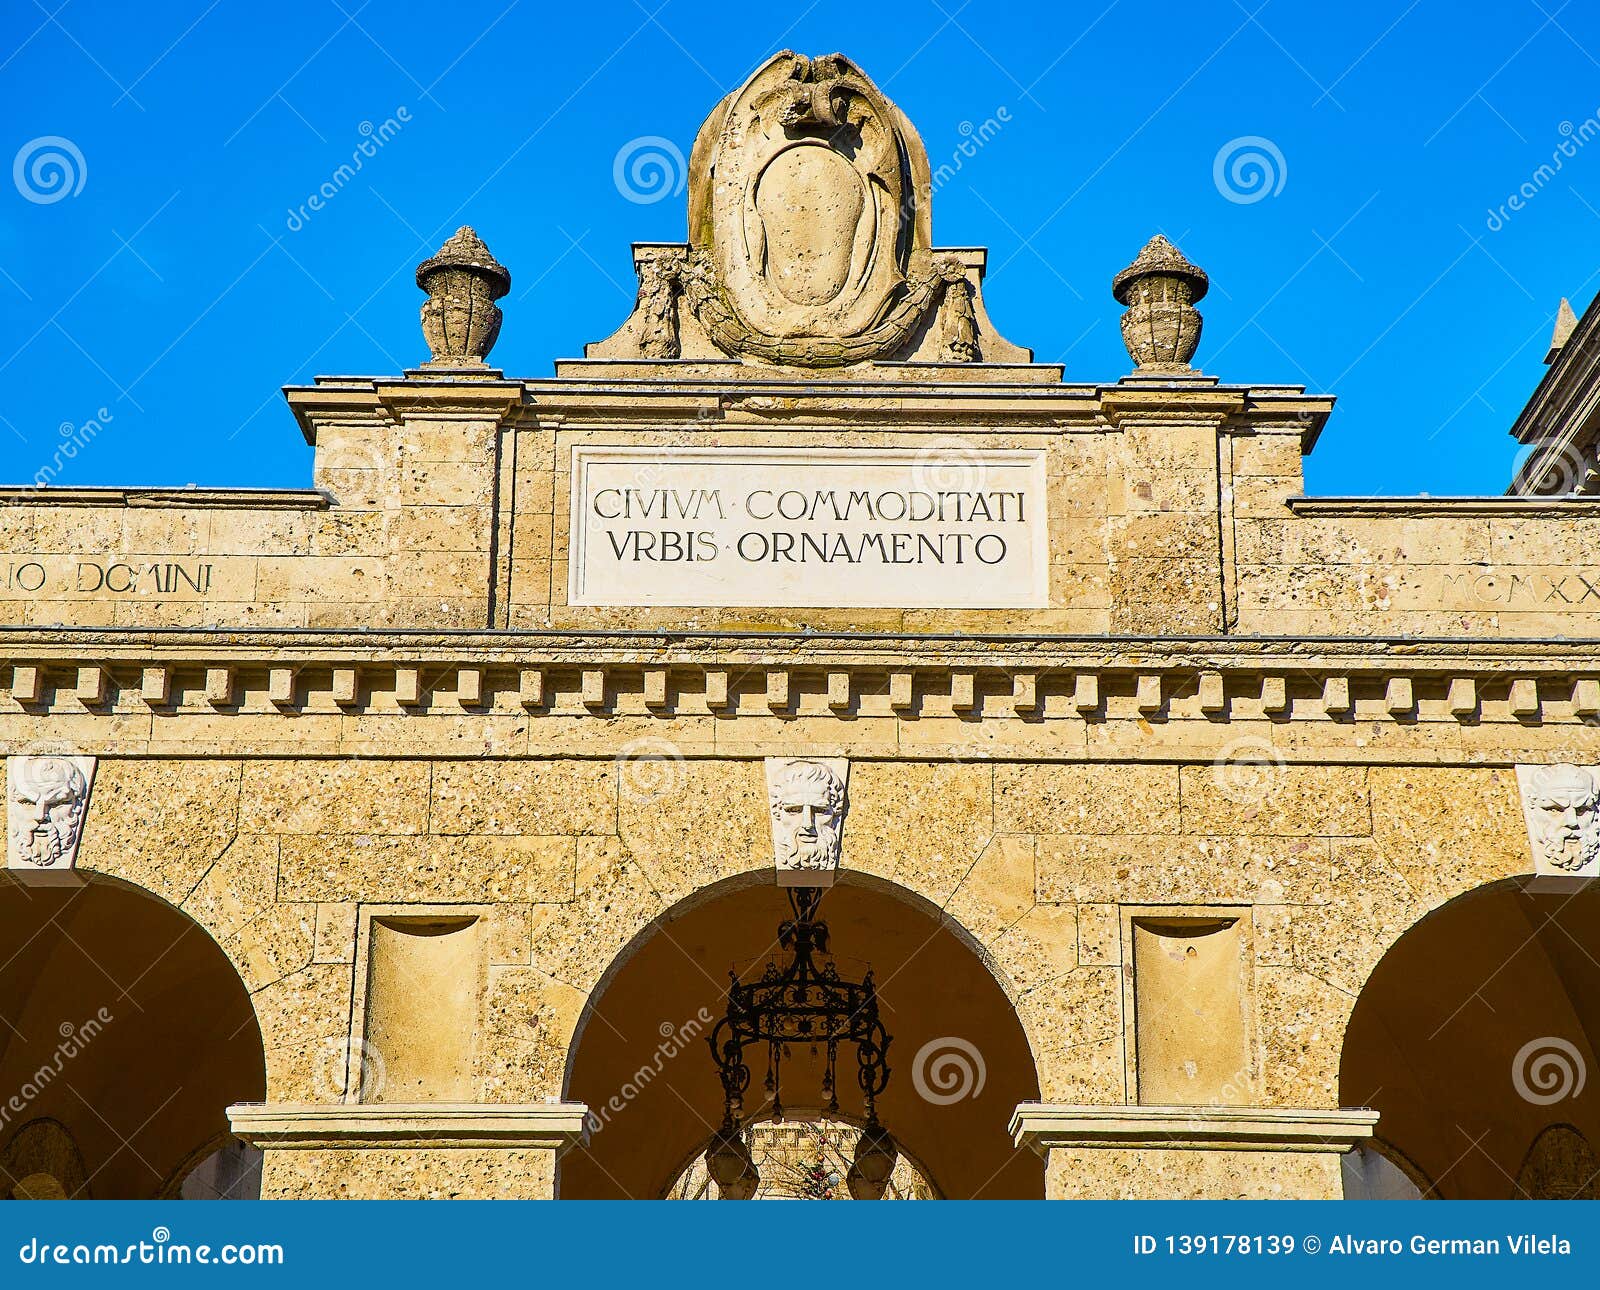 the sentierone portico at the centro piacentiniano. bergamo, lombardy, italy